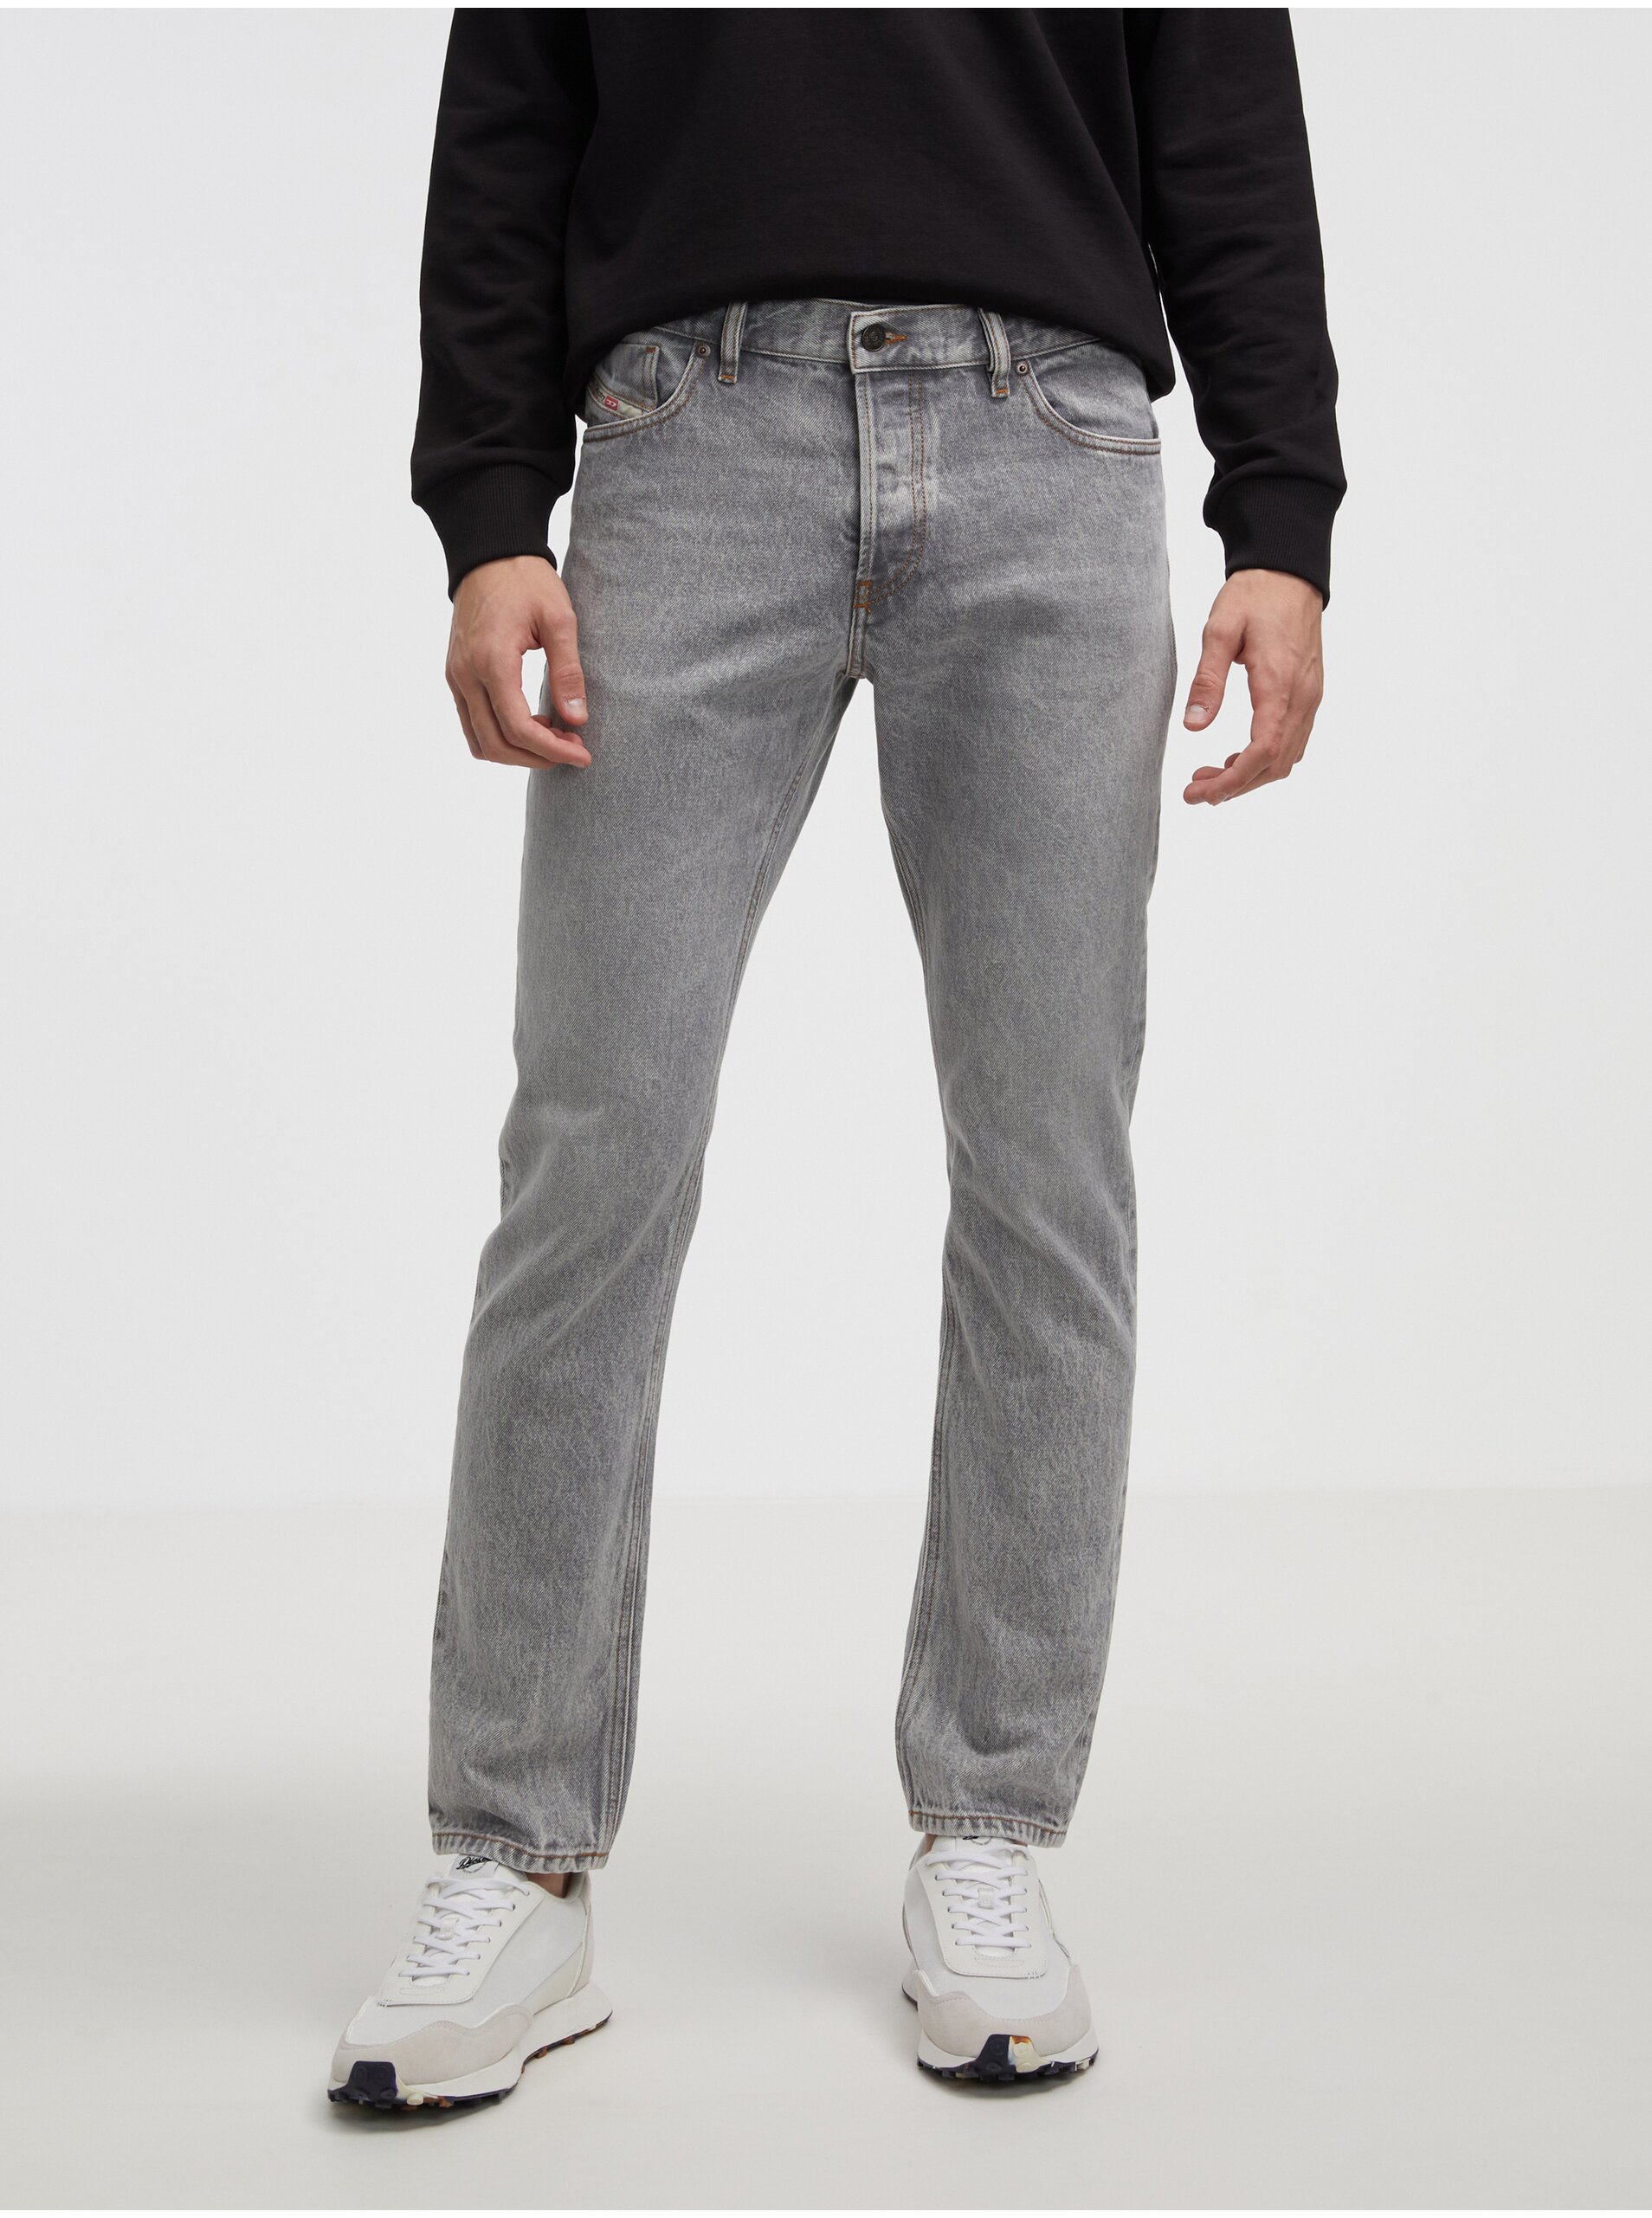 Grey Men's Skinny Fit Diesel Jeans - Men's